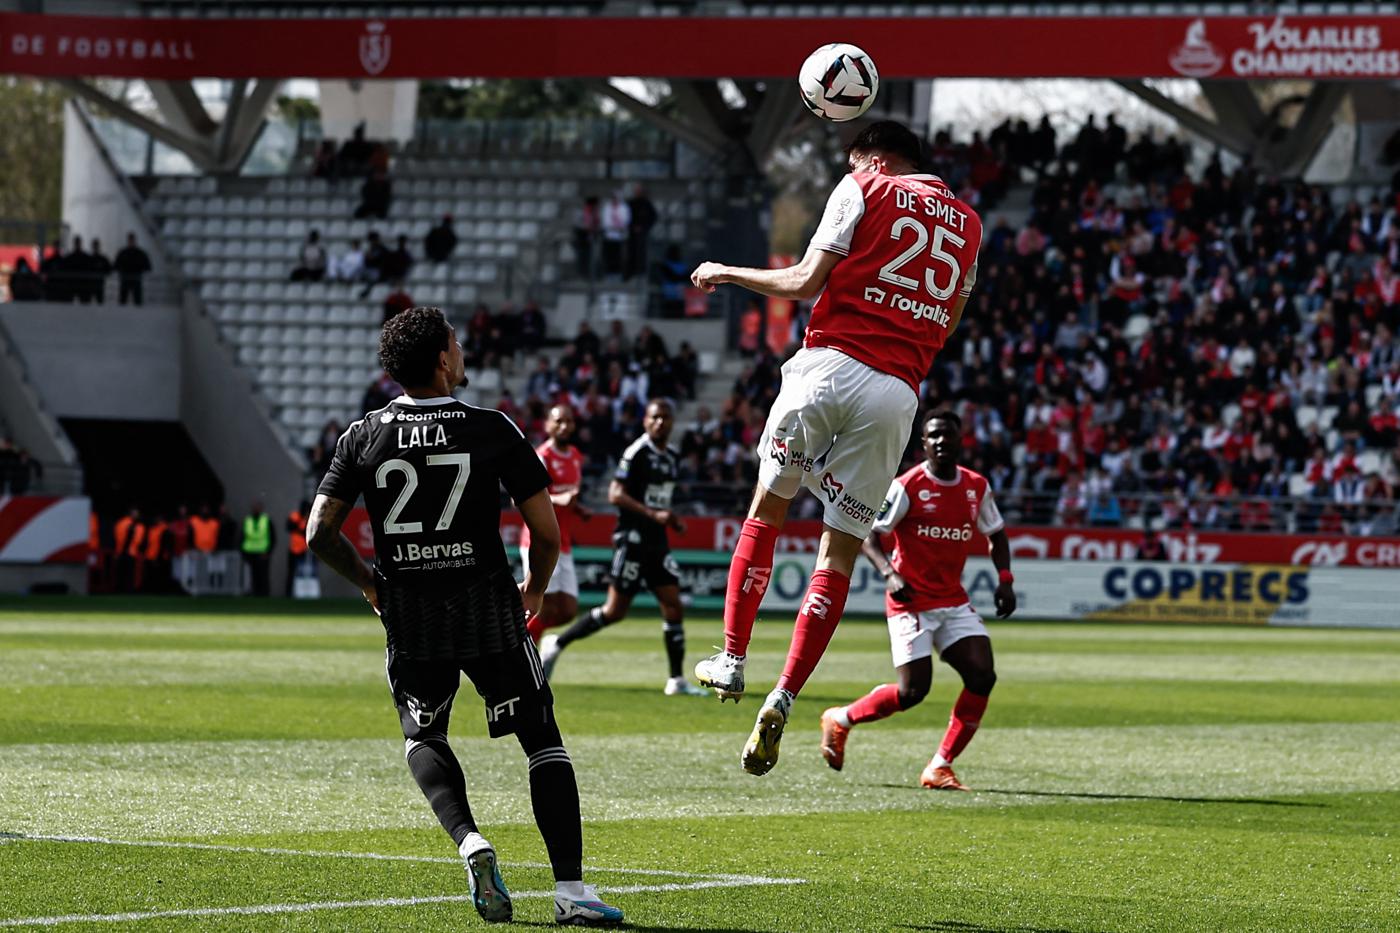 Reims - Brest - 1:1. Französische Meisterschaft, 30. Runde. Spielbericht, Statistiken